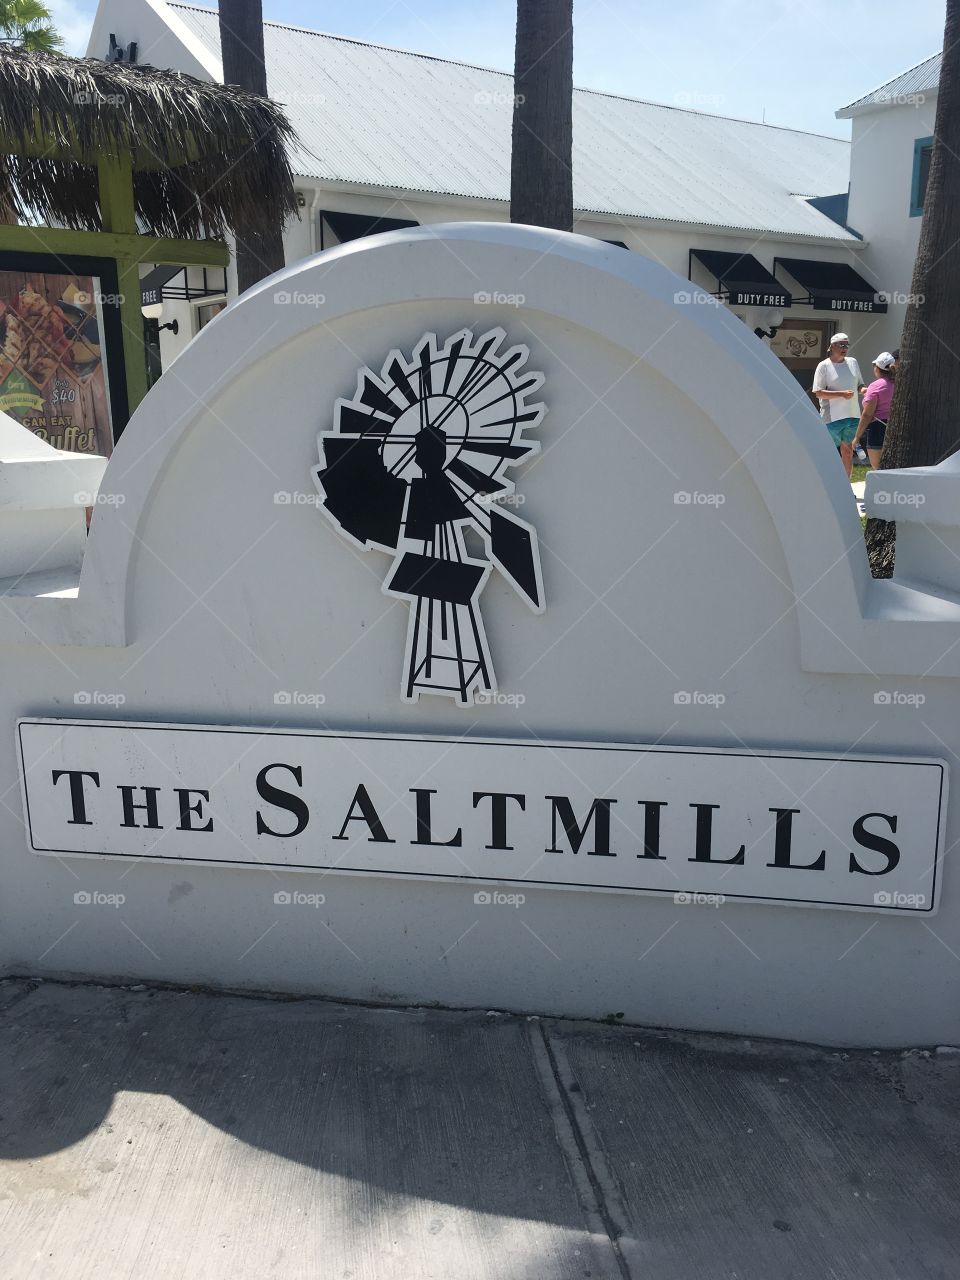 The salt mills